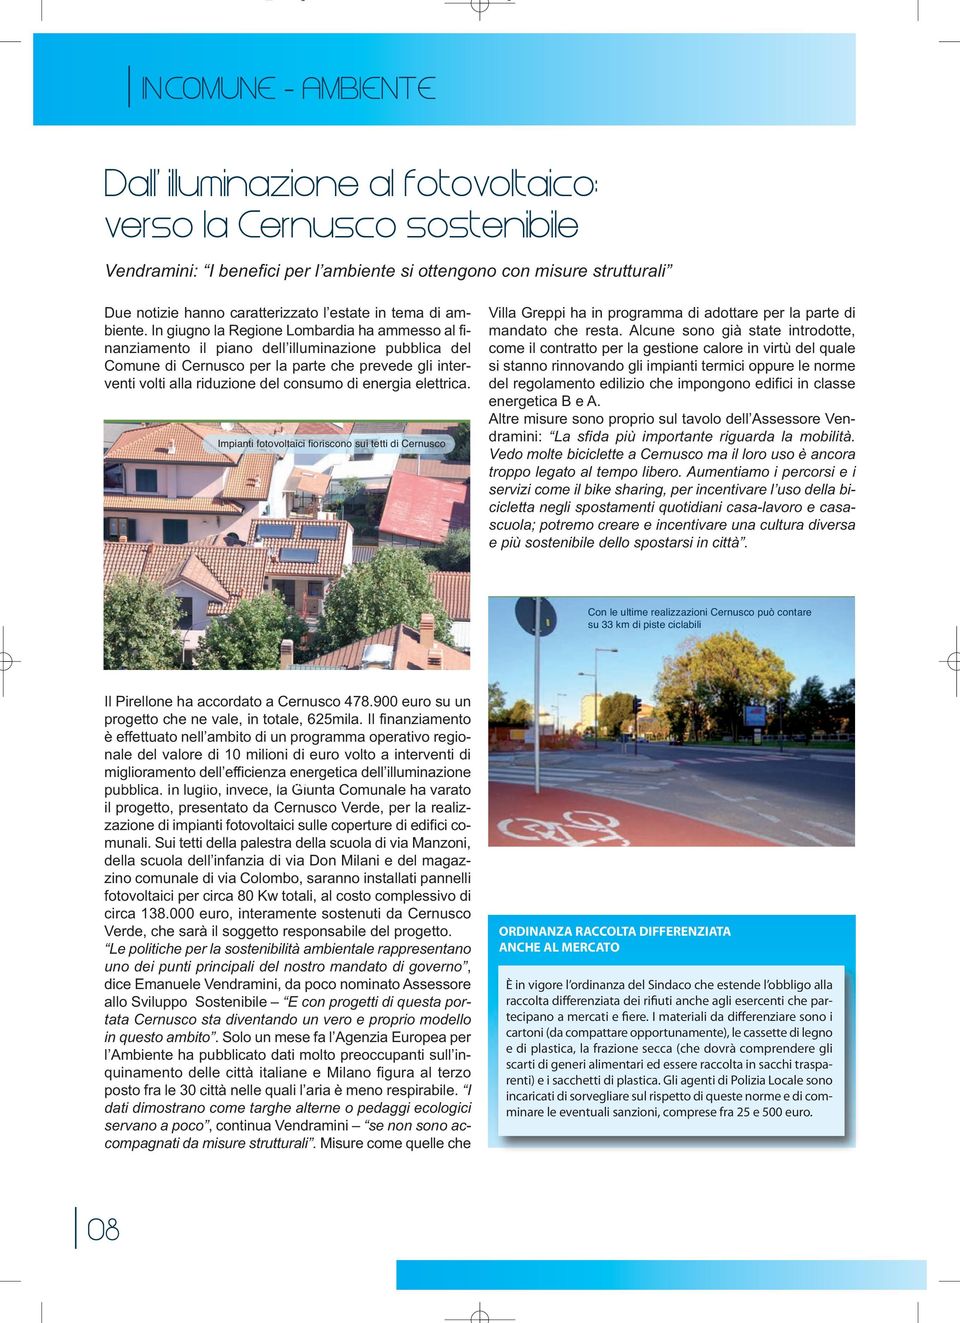 In giugno la Regione Lombardia ha ammesso al finanziamento il piano dell illuminazione pubblica del Comune di Cernusco per la parte che prevede gli interventi volti alla riduzione del consumo di